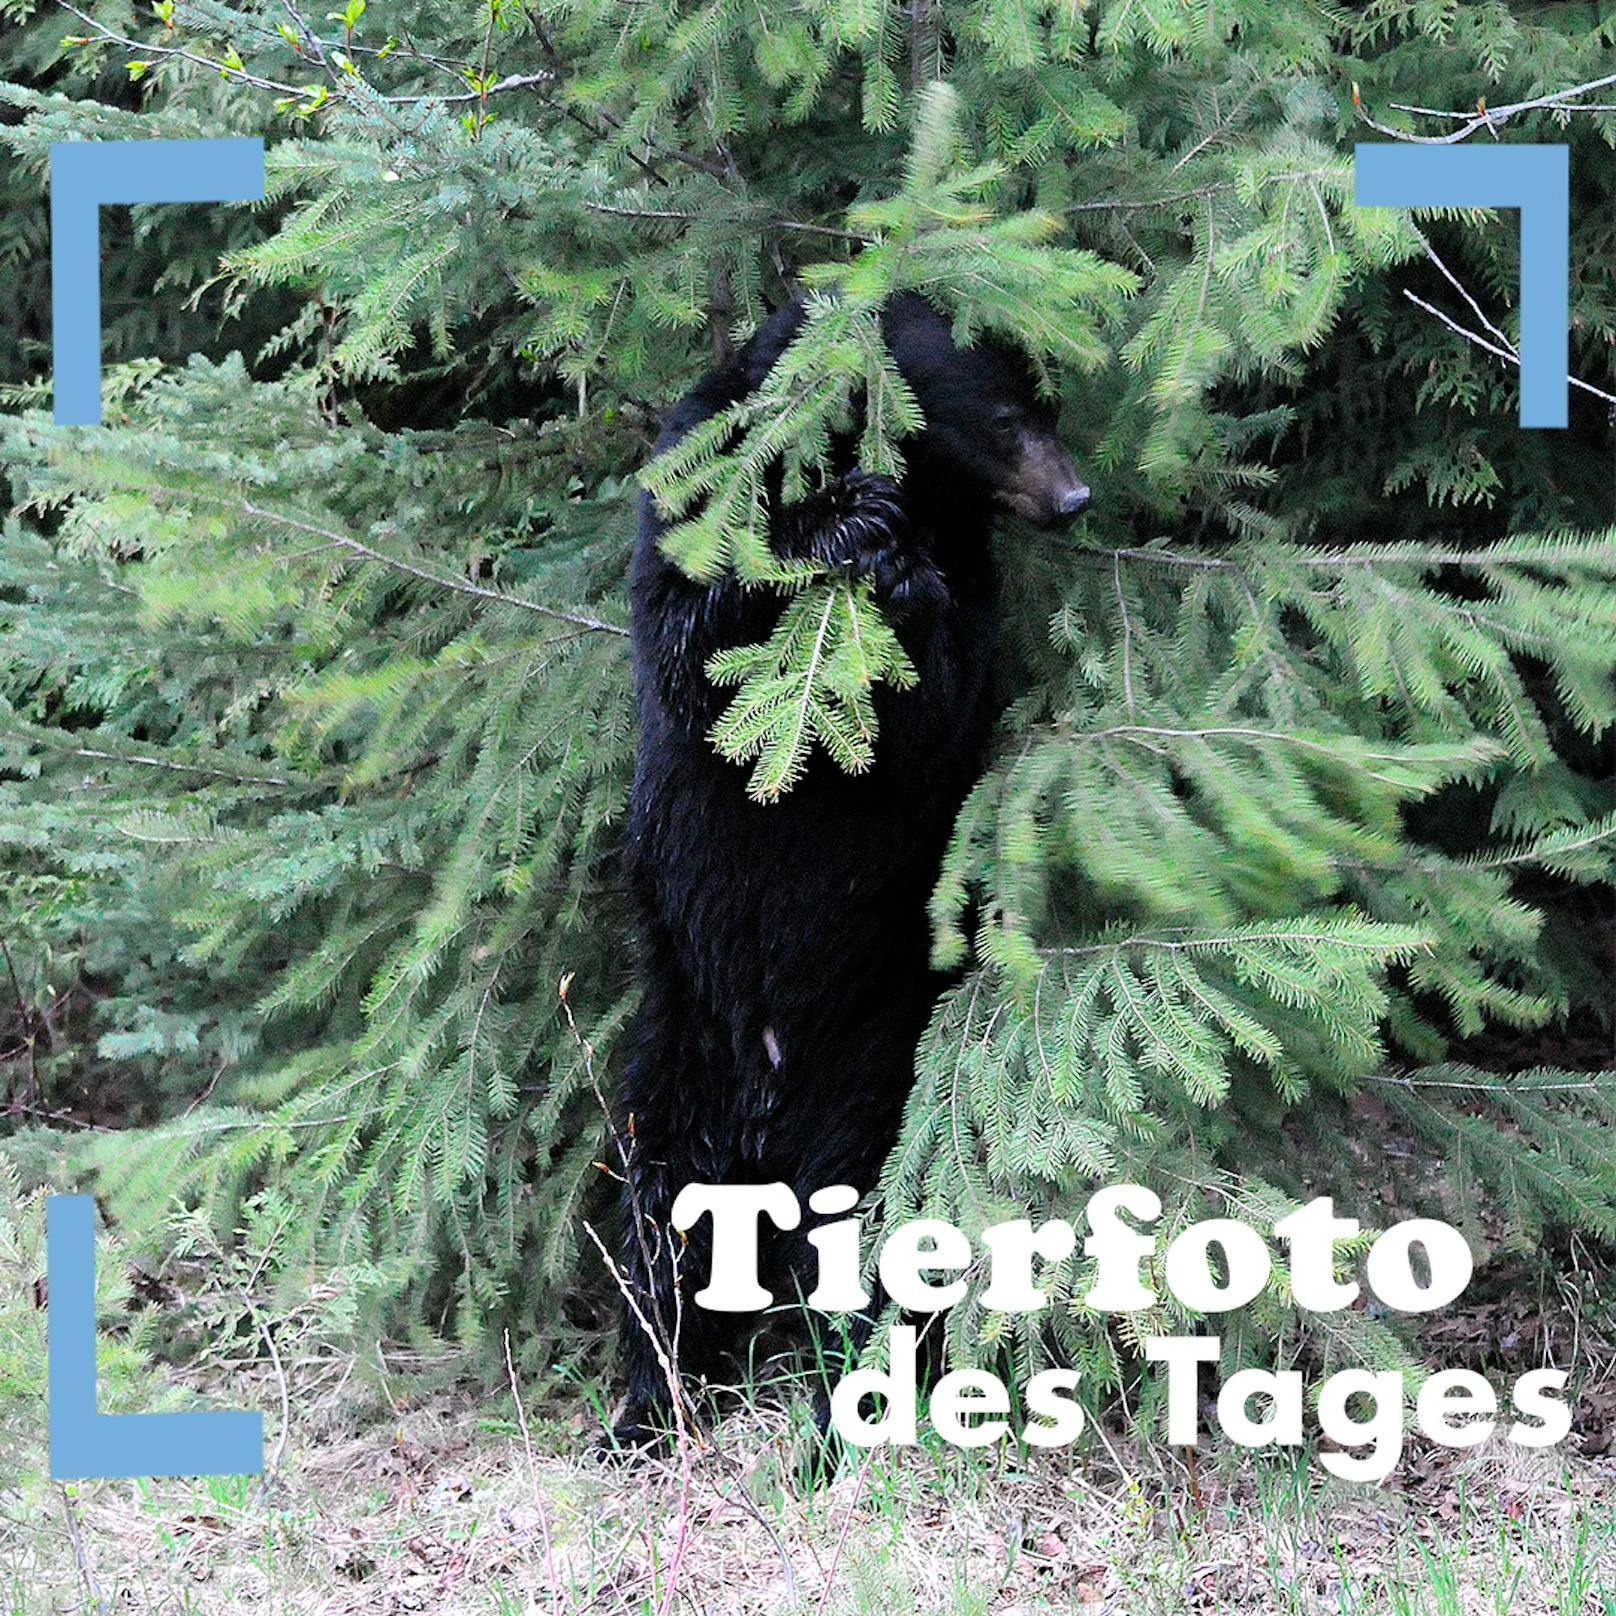 Soeben wurde als "Tierfoto des Jahres" - die Aufnahme eines Tigers, der einen Baum umarmt - gekürt. Eine Leserin hat mit uns ein Foto aus ihrer Serie eines Schwarzbären geteilt, die sie in Kanada aufgenommen hat. Wir danken herzlich für das schöne Foto!